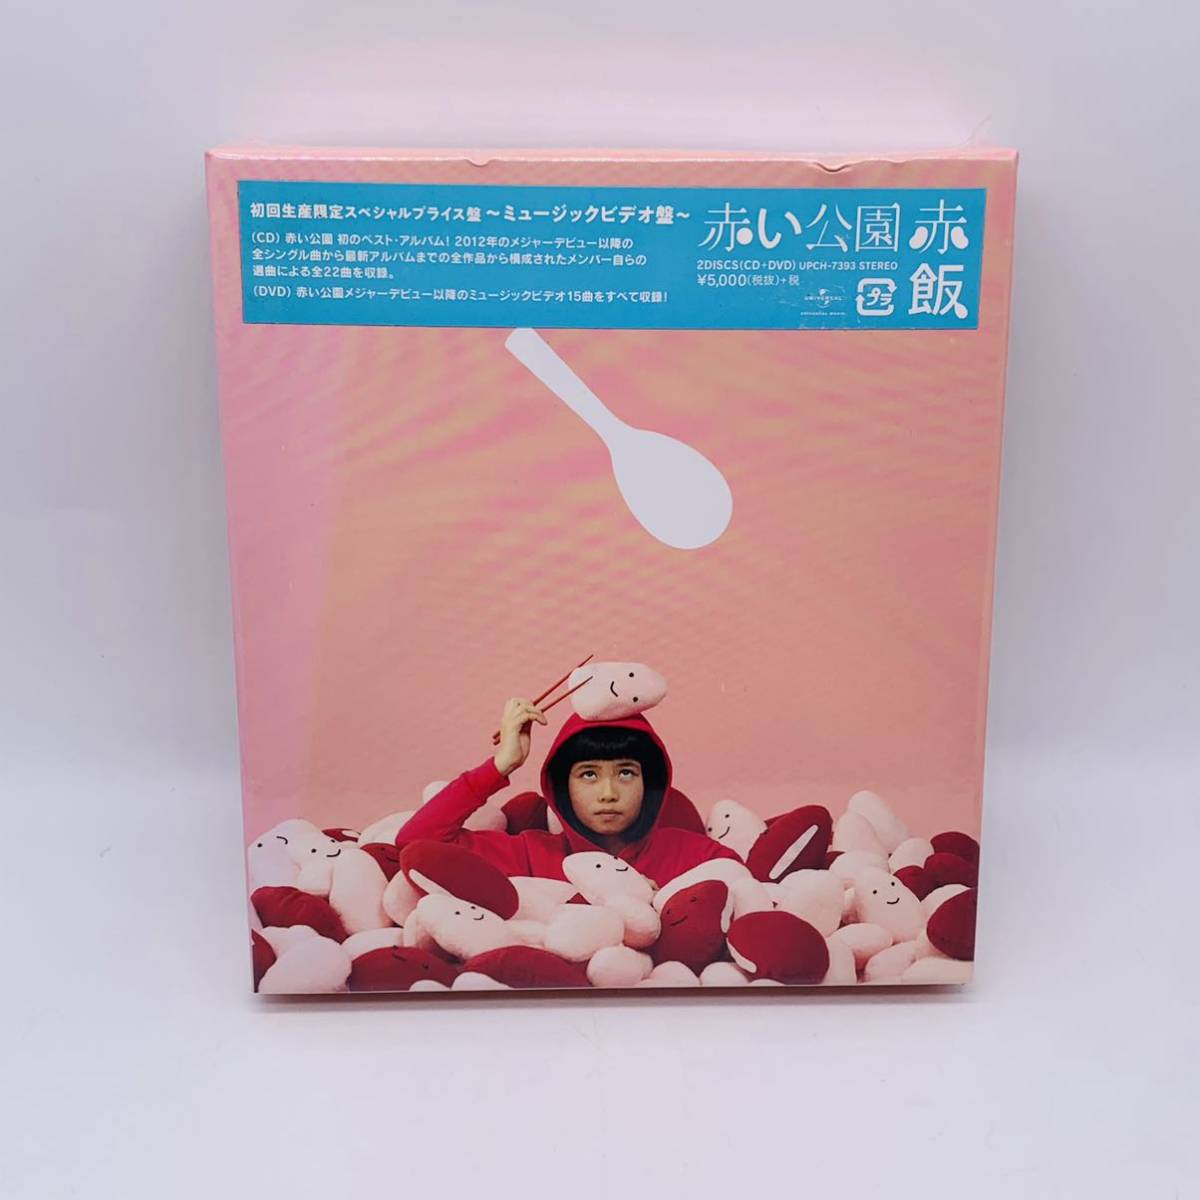 日本製 赤い公園 初回限定盤セット THE PARK アルバム BD 赤飯